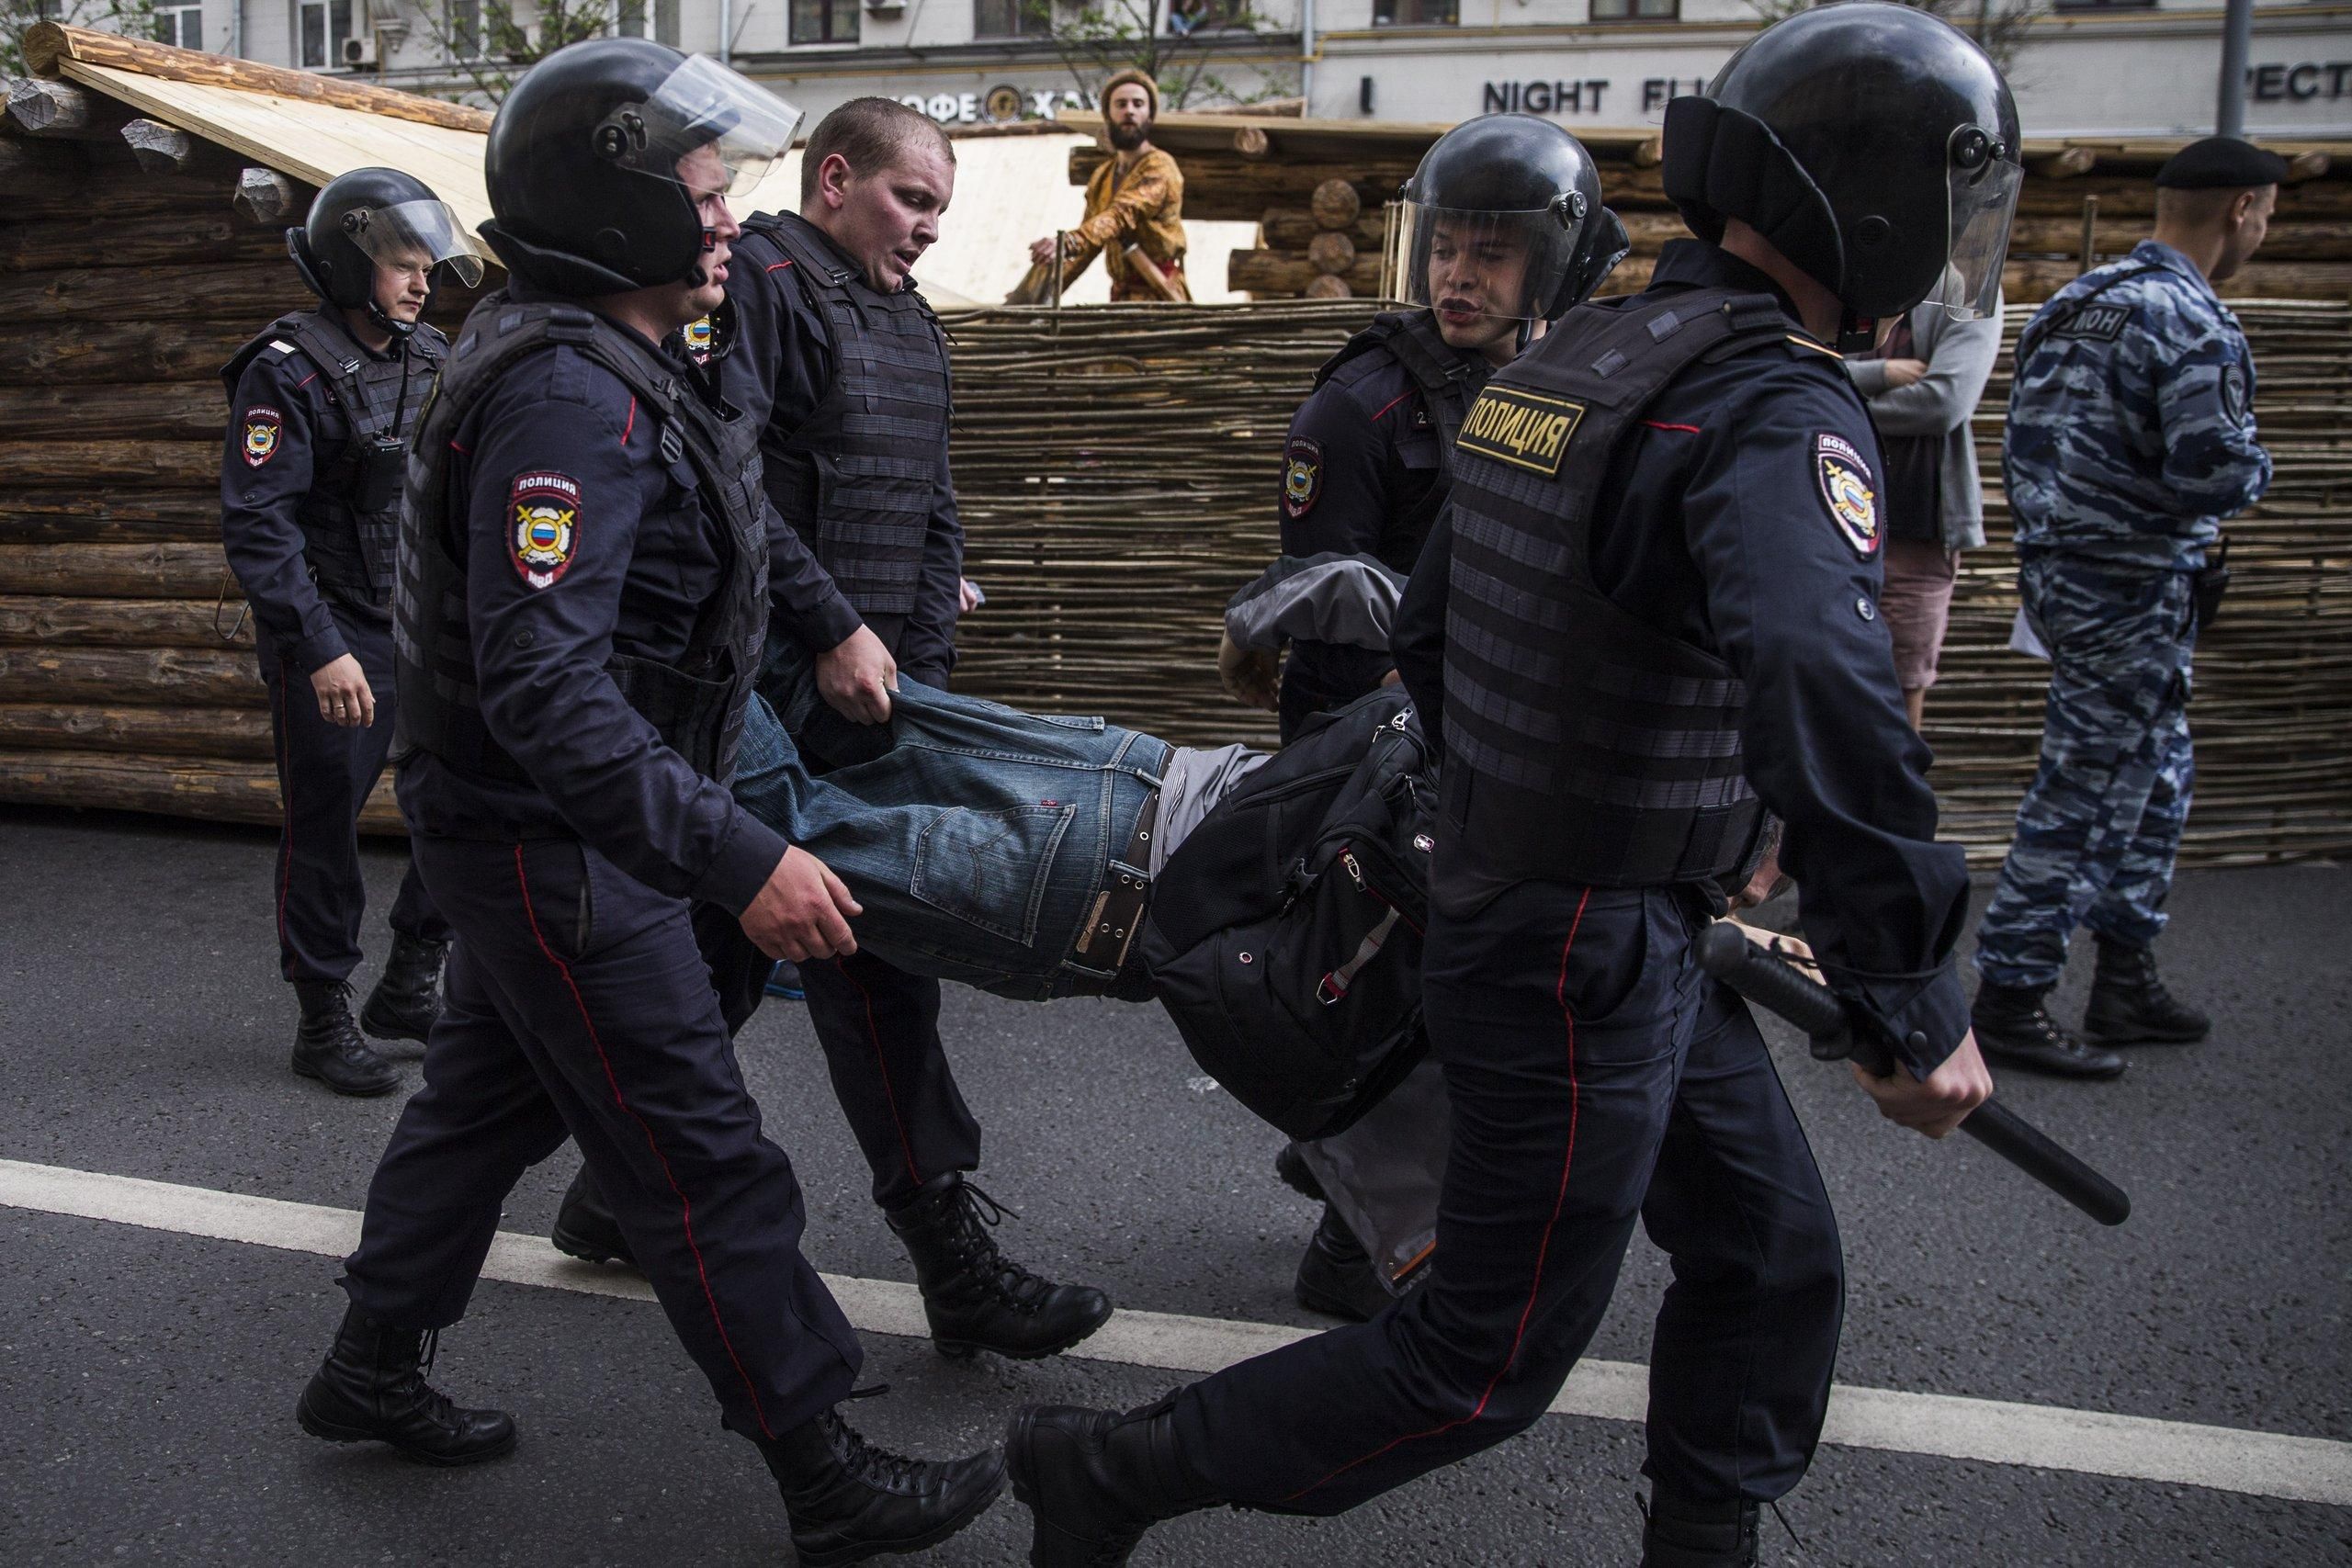 Митинг в Москве: количество задержанных резко возросло, активисты сообщают о жестоких избиениях